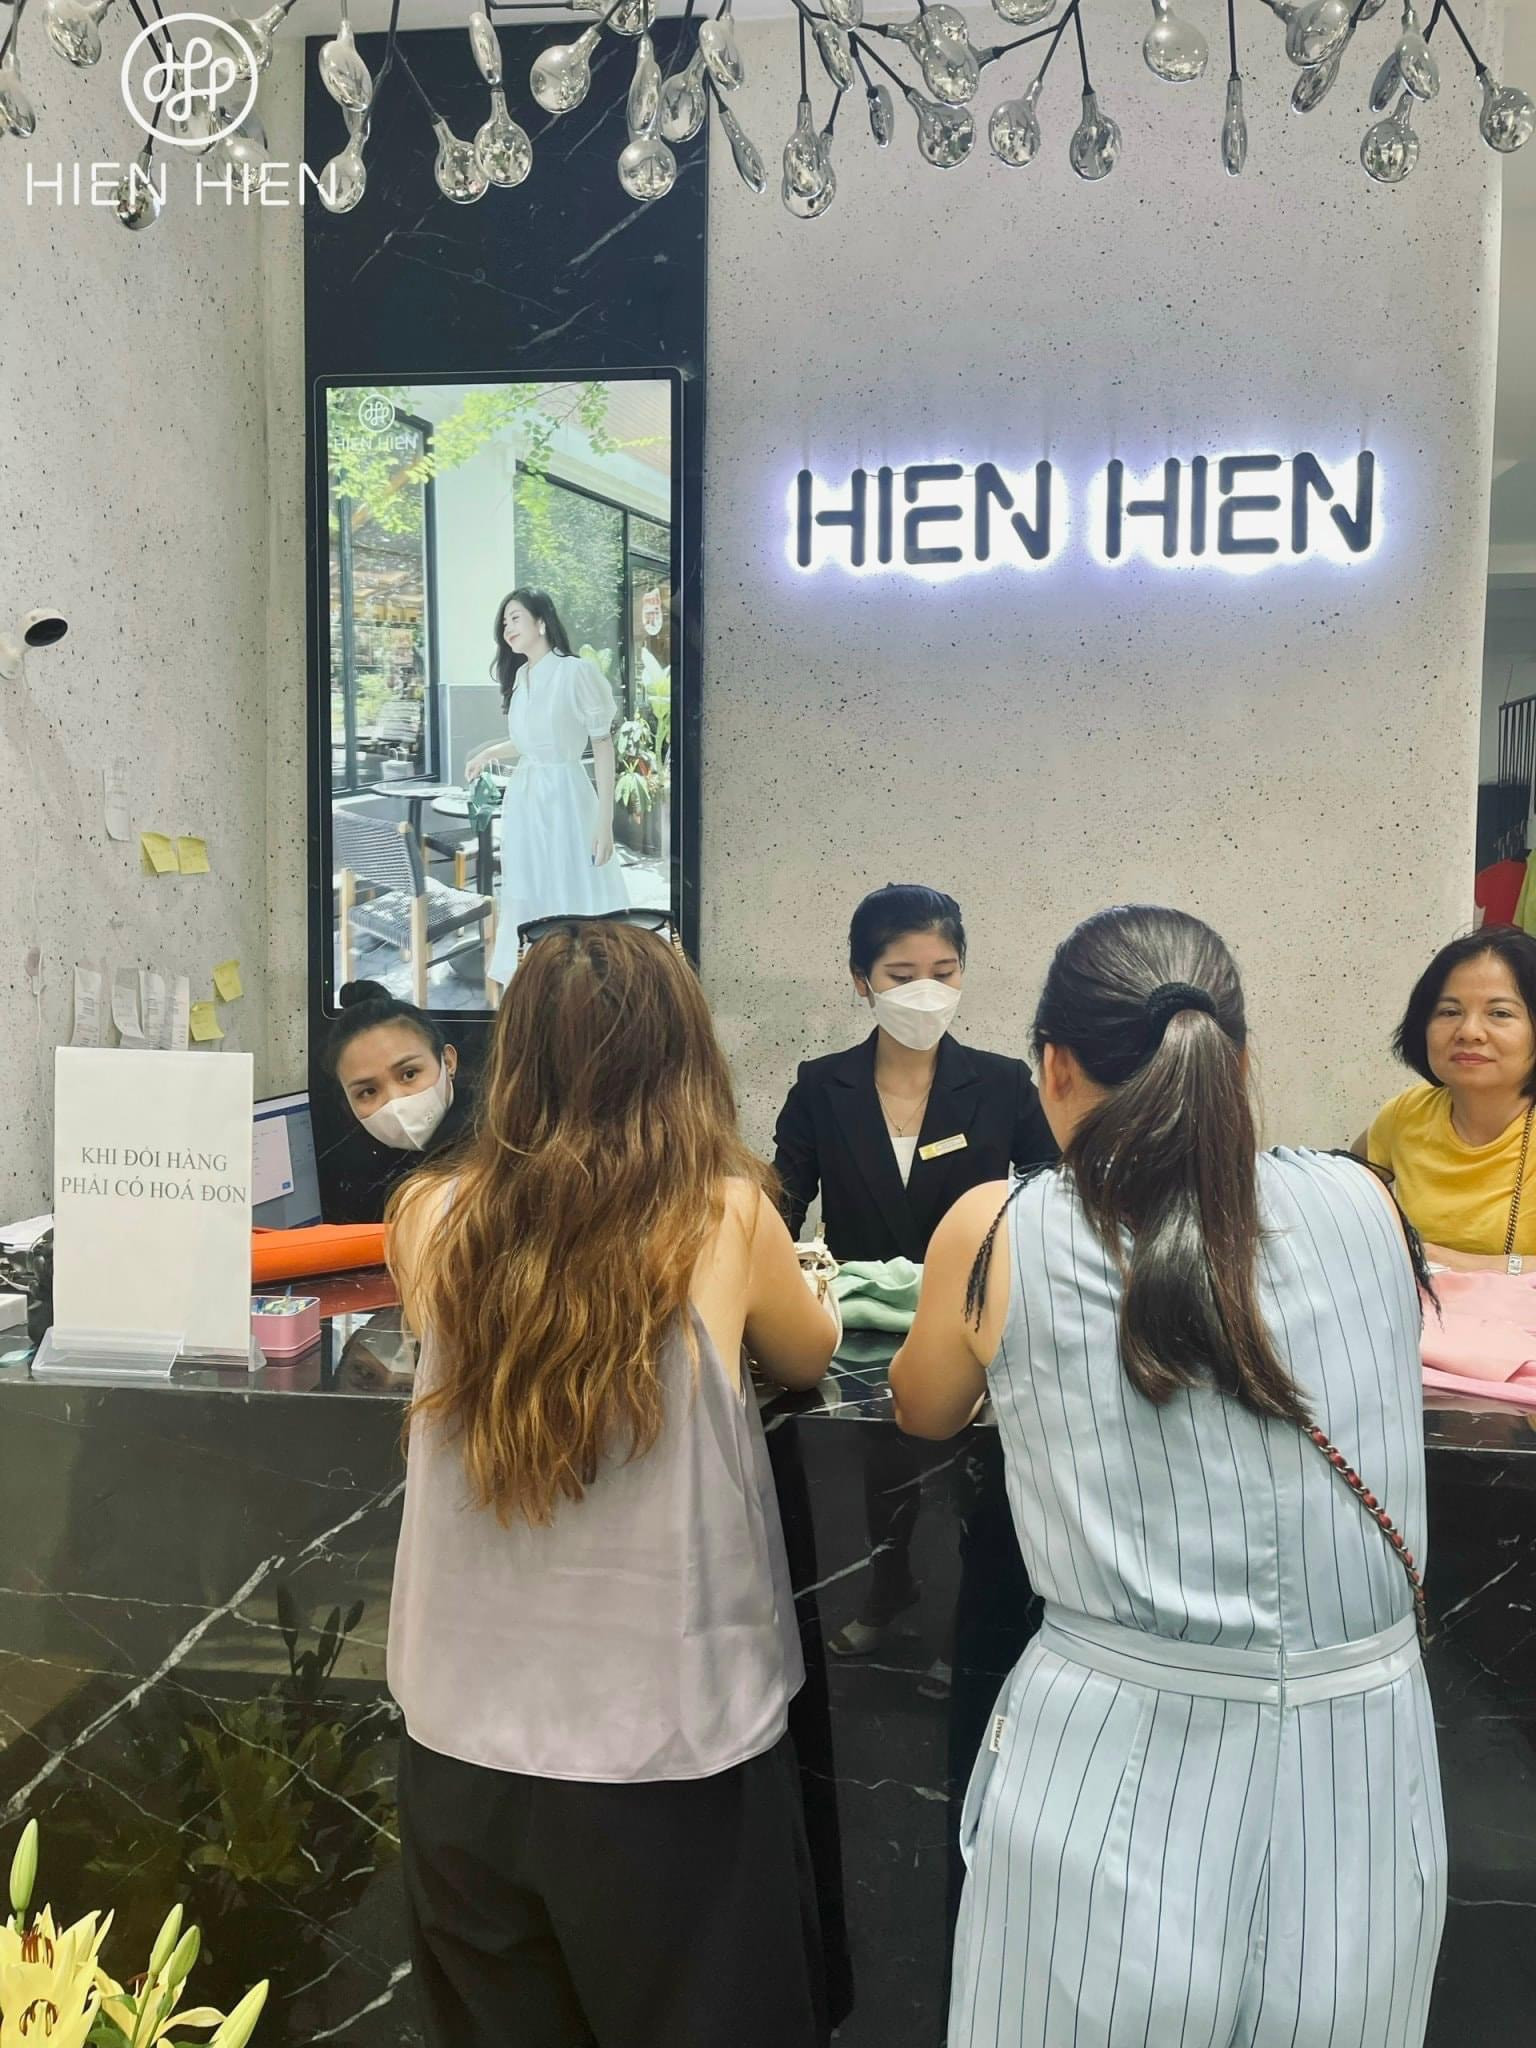 Hien Hien Store, quý cô công sở, Vinh: Sự thanh lịch và tinh tế của nữ giới Việt đích thực được thể hiện qua bức ảnh về cô nàng quý cô công sở tại Hien Hien Store. Nét đẹp hiện đại và trang nhã của Vinh được tái hiện rõ nét trong khung hình này.